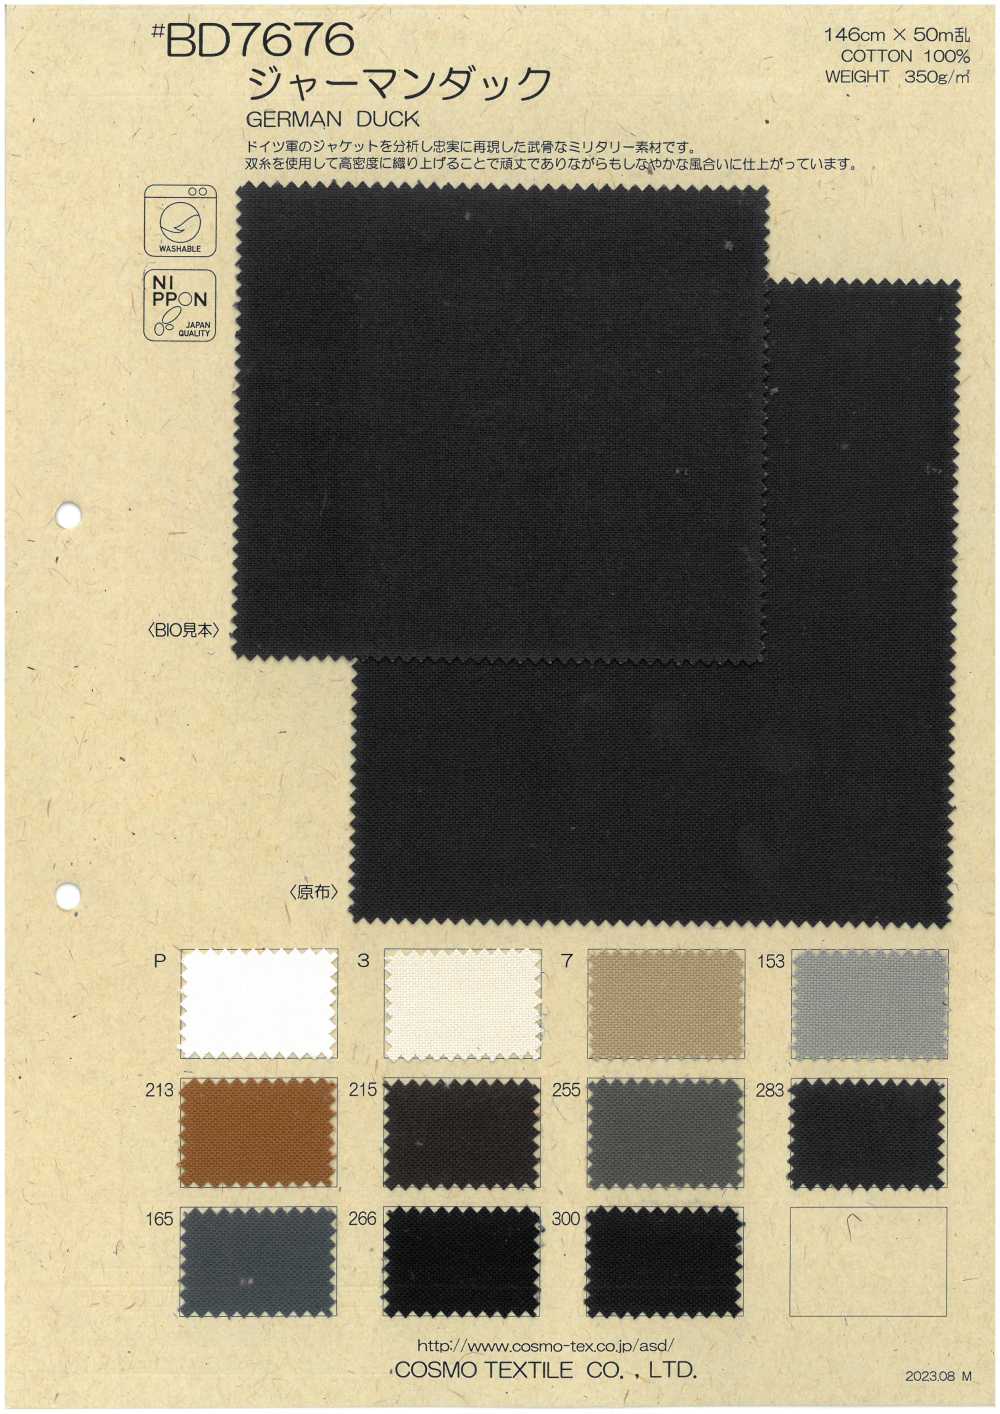 BD7676 Canard Allemand[Fabrication De Textile] COSMO TEXTILE